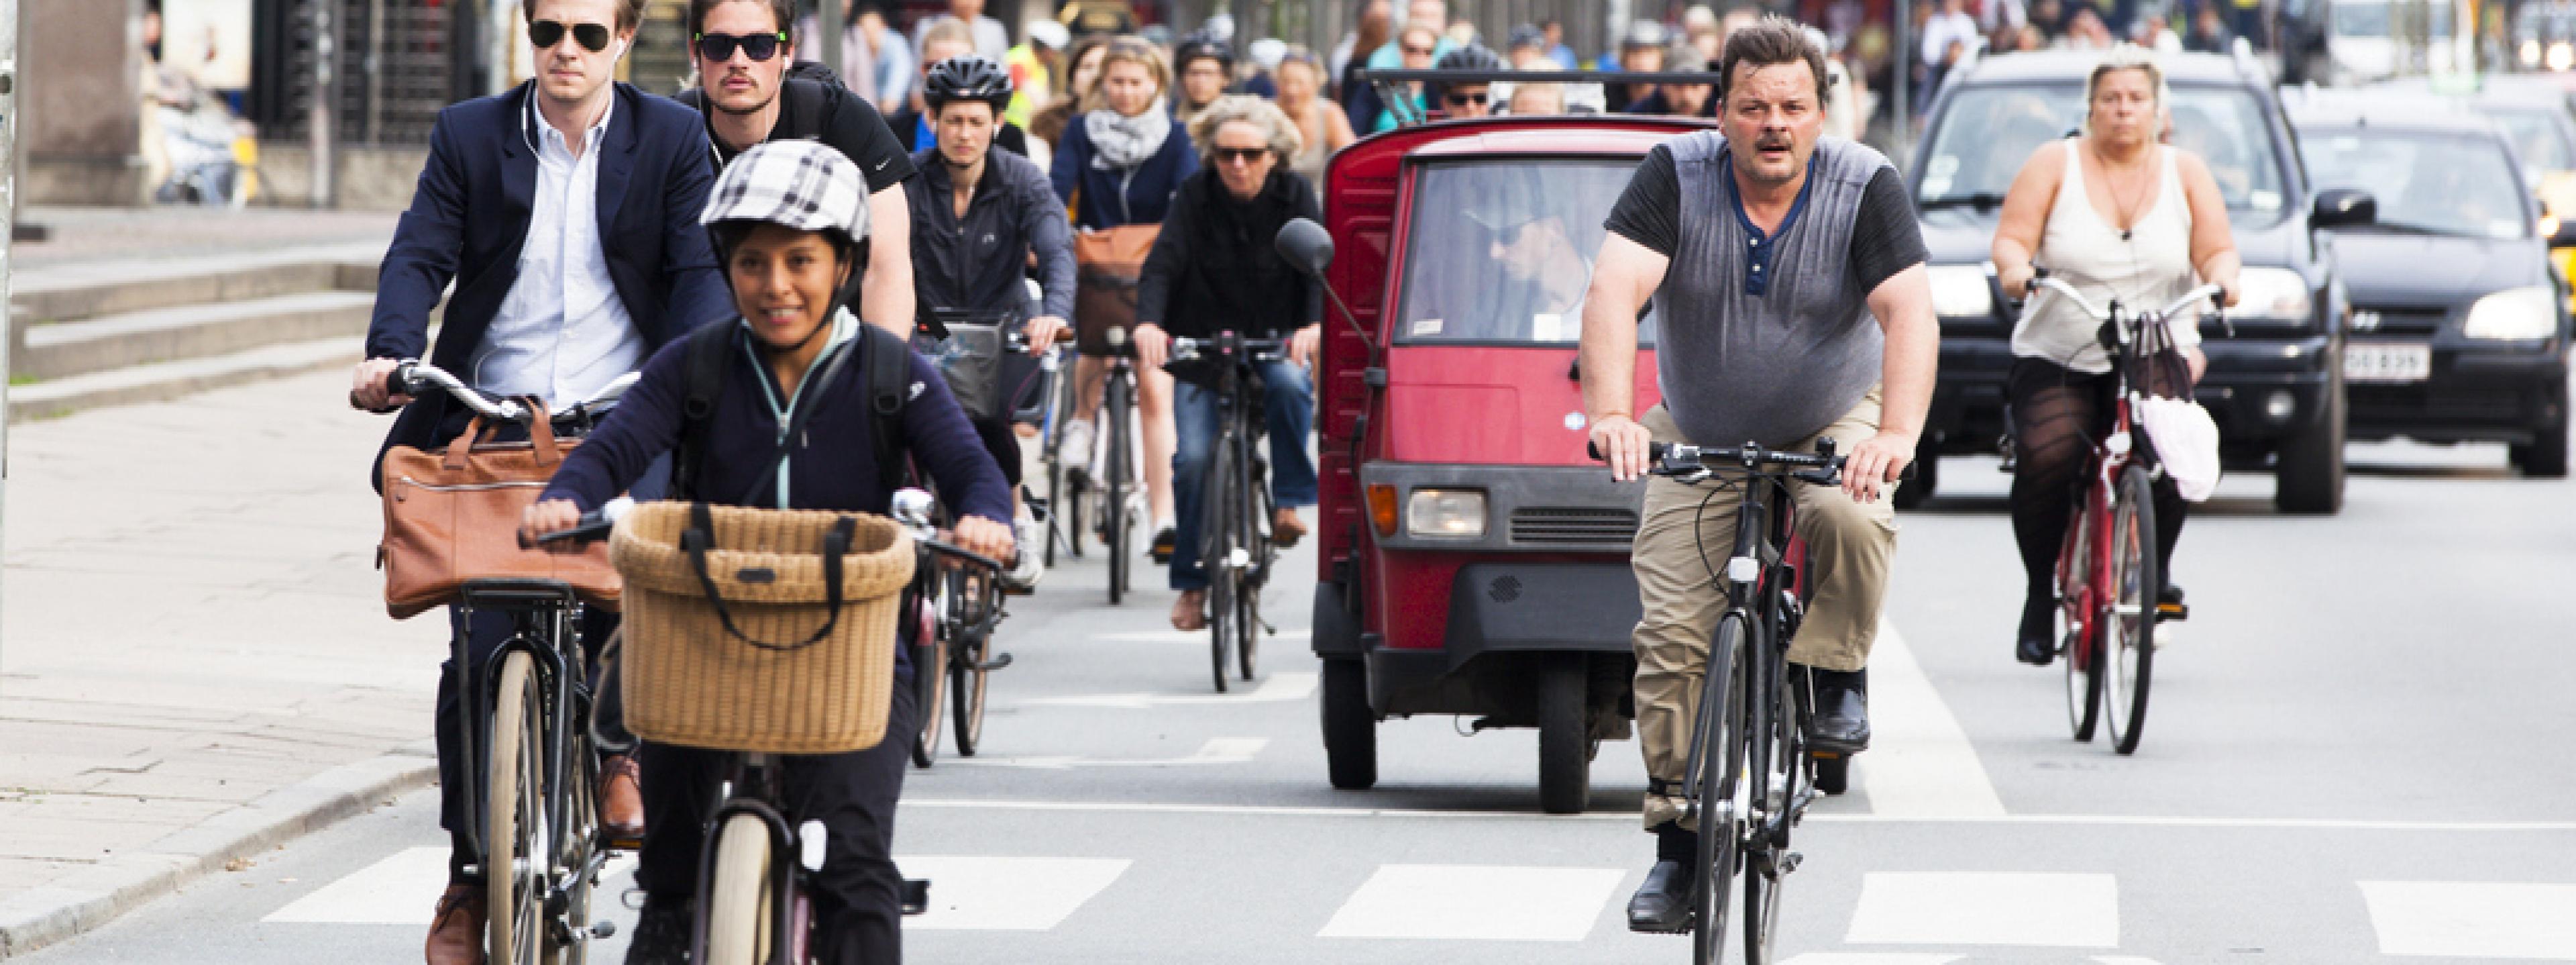 Einige Dutzend Radfahrer sind auf der Straße mit Autos unterwegs